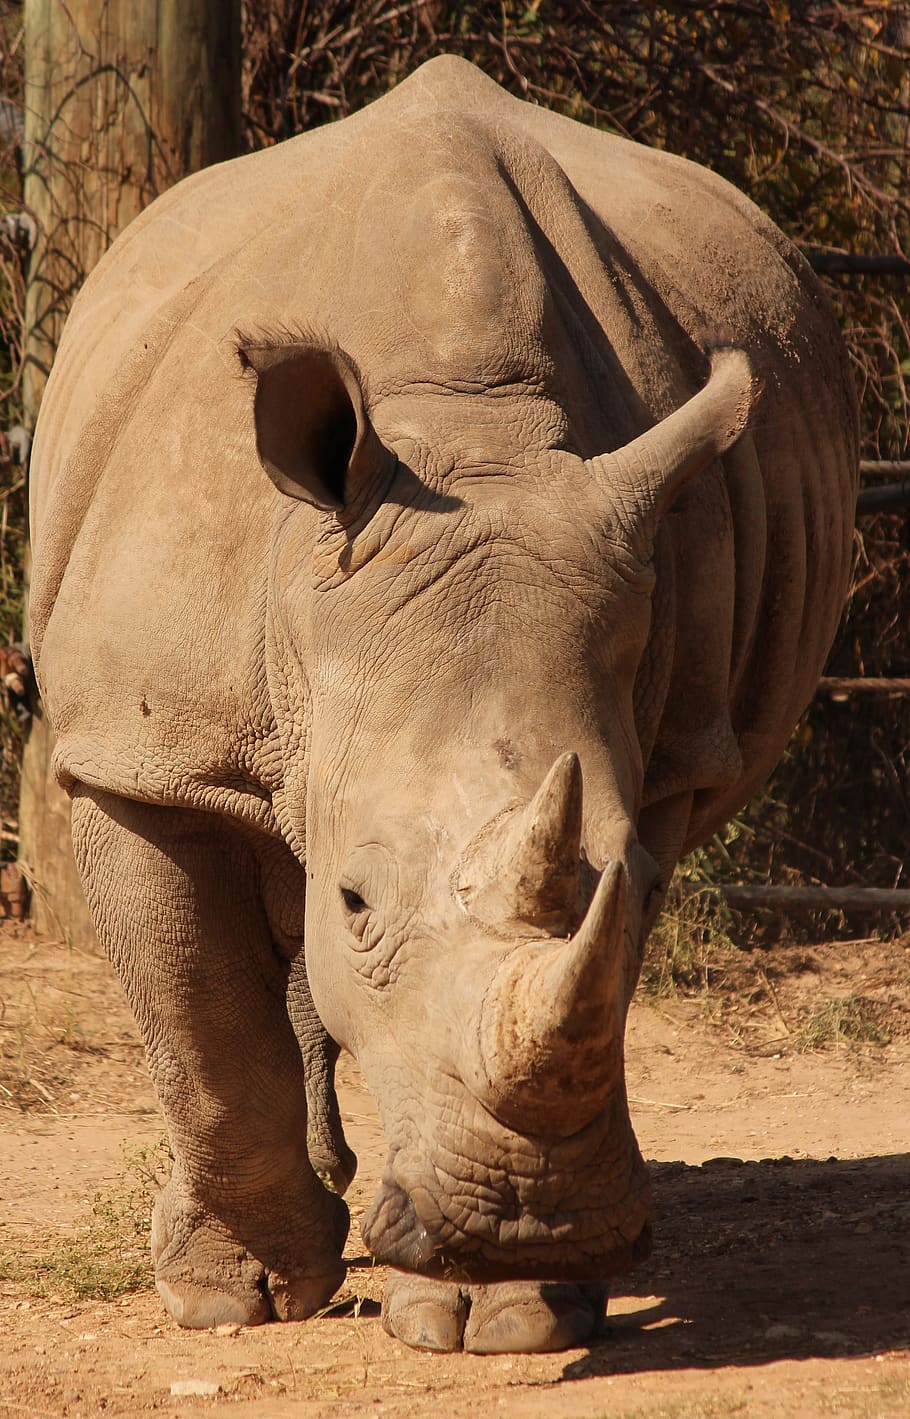 rinoceronte, animal, zoológico, áfrica, paquidermo, cuerno, safari, salvaje, temas de animales, fauna animal